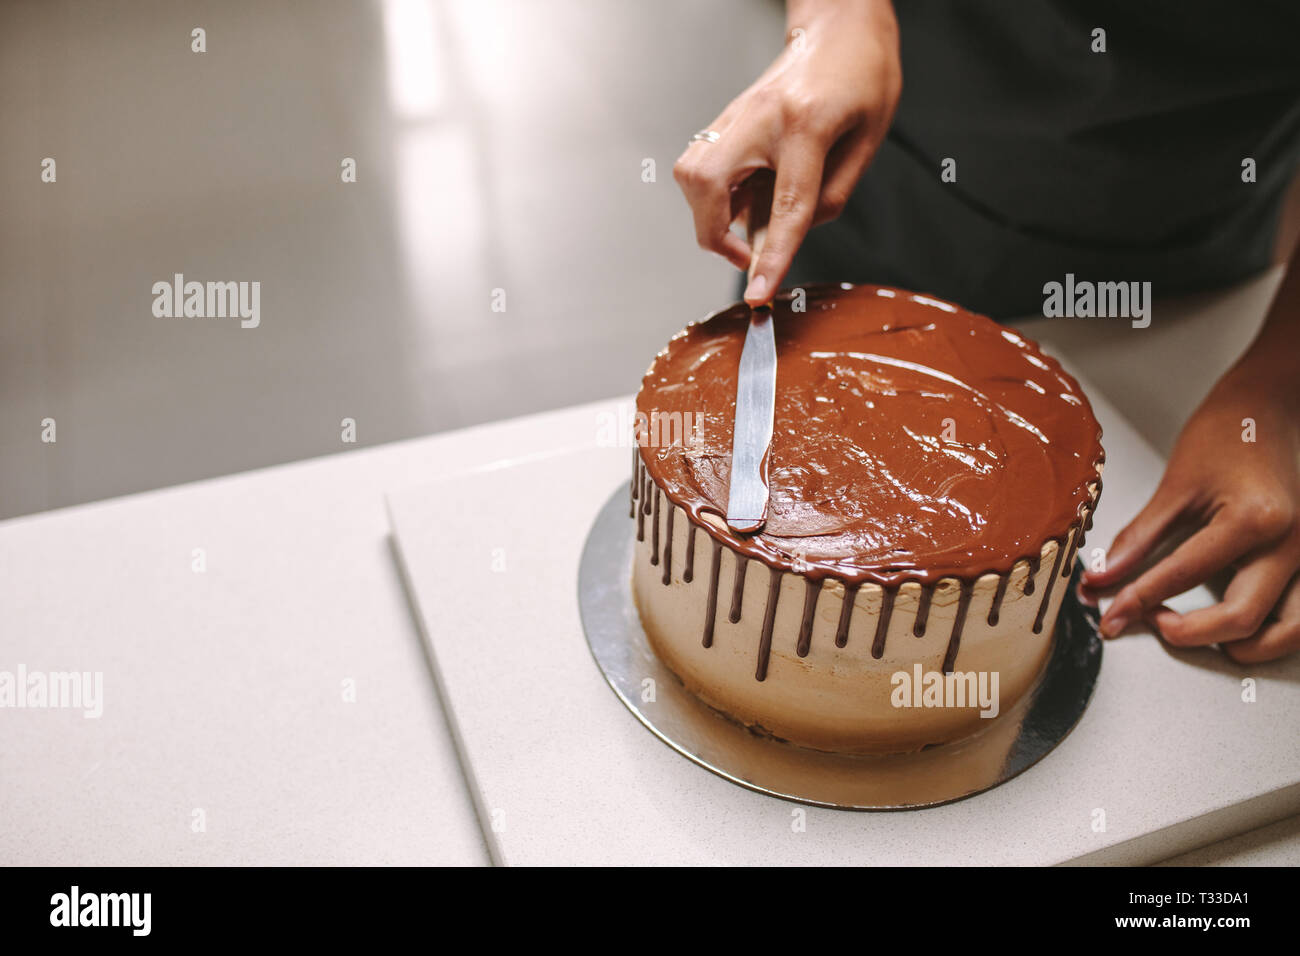 Décoration pâtisserie professionnelle délicieux gâteau au chocolat glaçage sur comptoir de la cuisine. Chef pâtissier de préparer un gâteau au chocolat. Banque D'Images